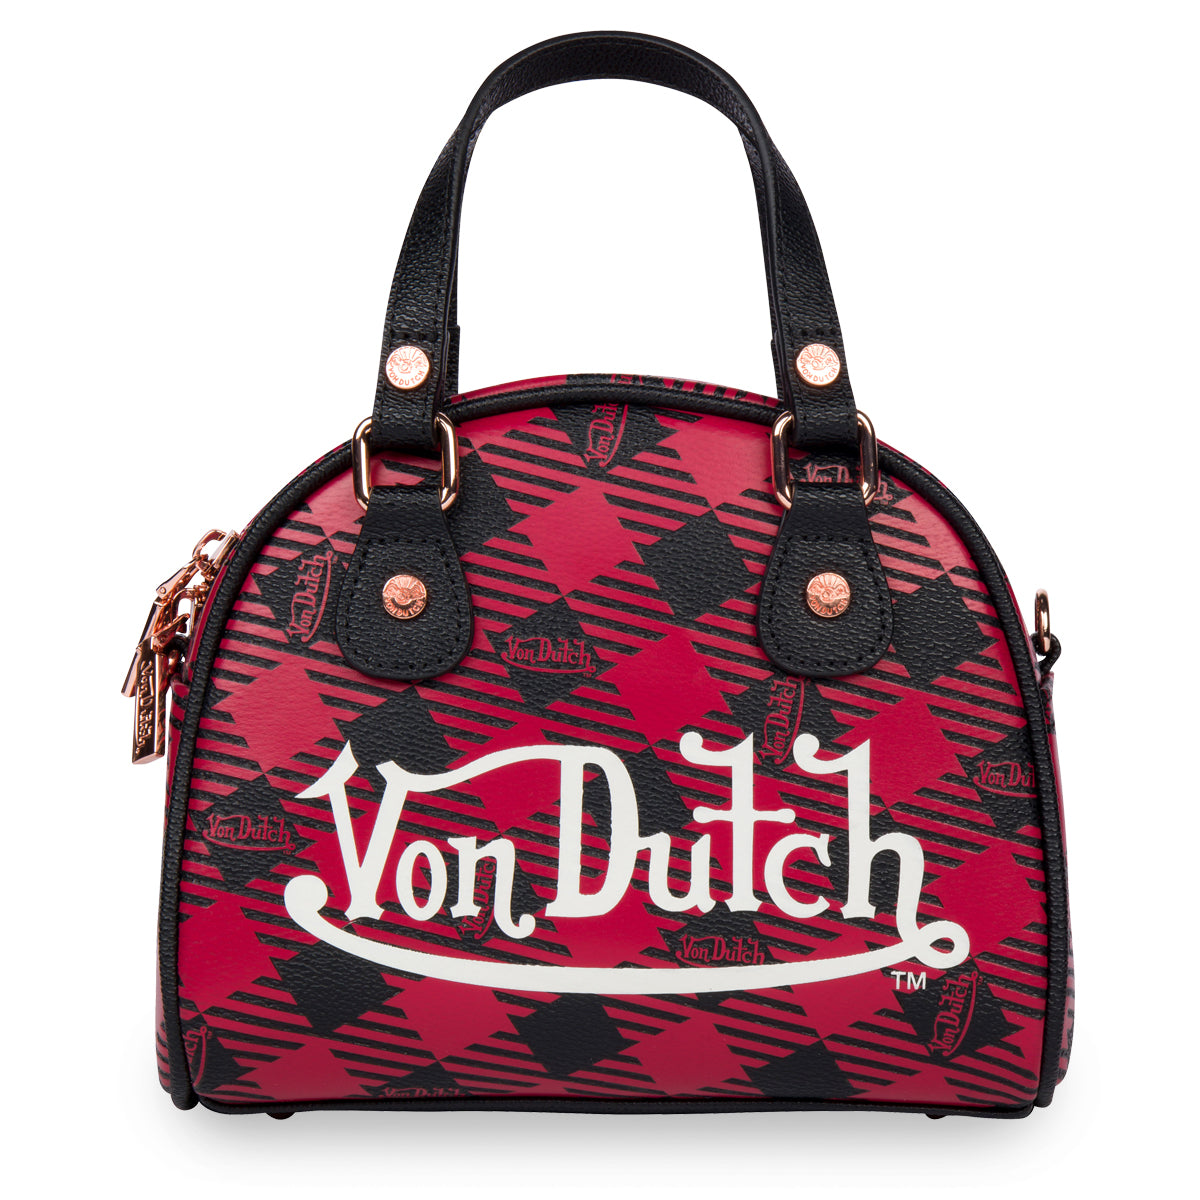 Hot Pink Cheetah Bowling Bag Small - Von Dutch